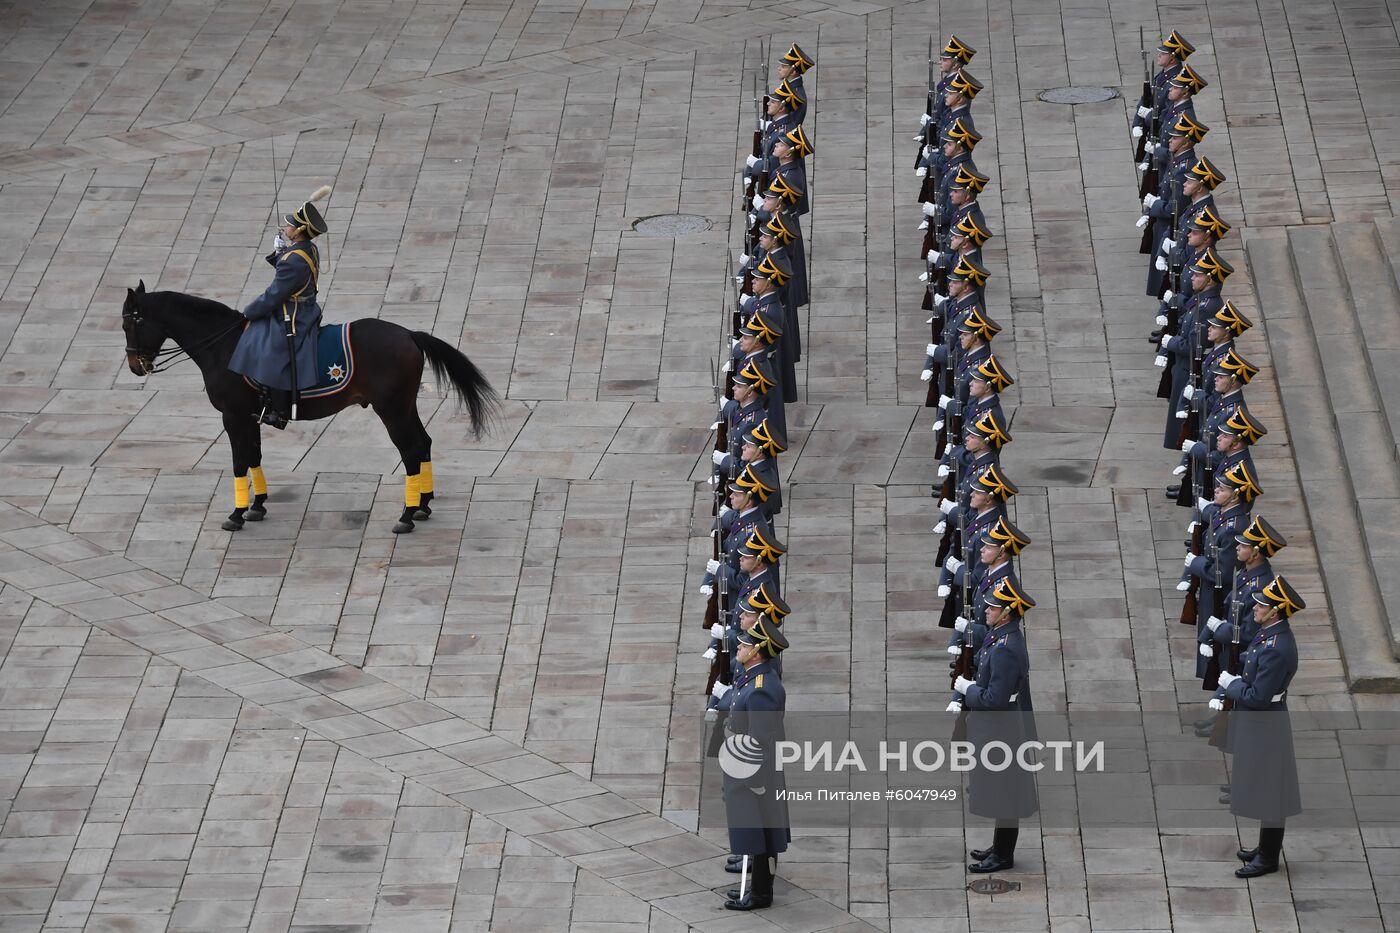 Последняя в 2019 году церемония развода пеших и конных караулов Президентского полка